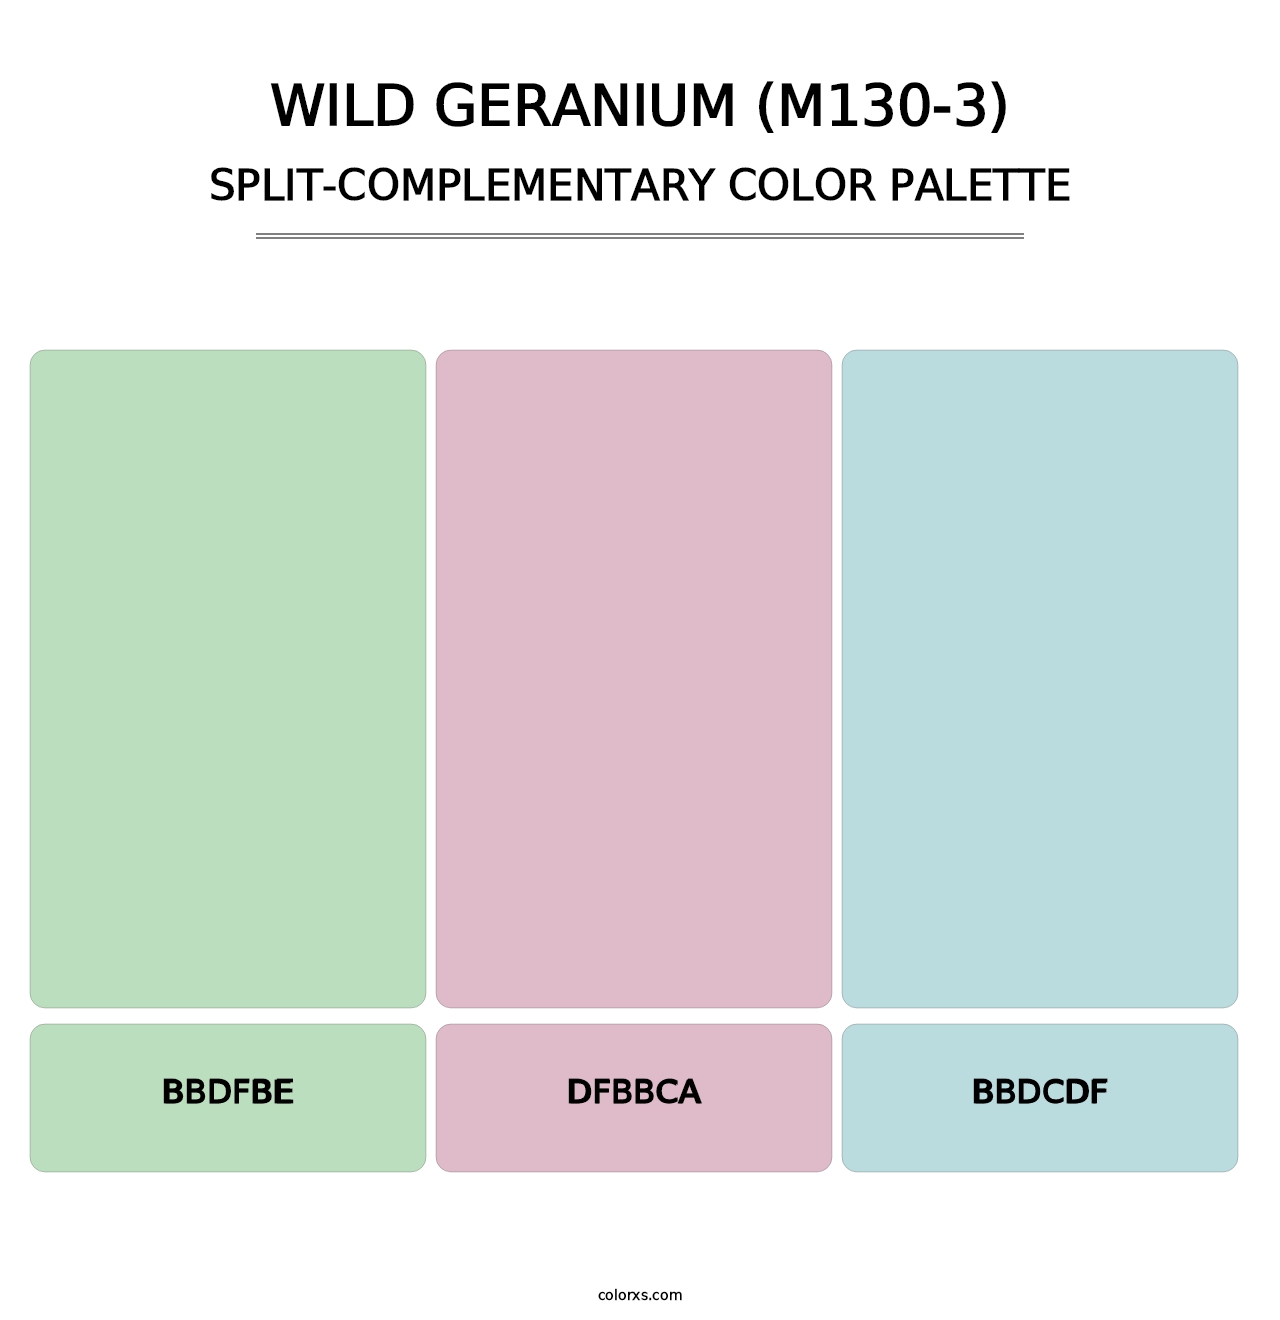 Wild Geranium (M130-3) - Split-Complementary Color Palette